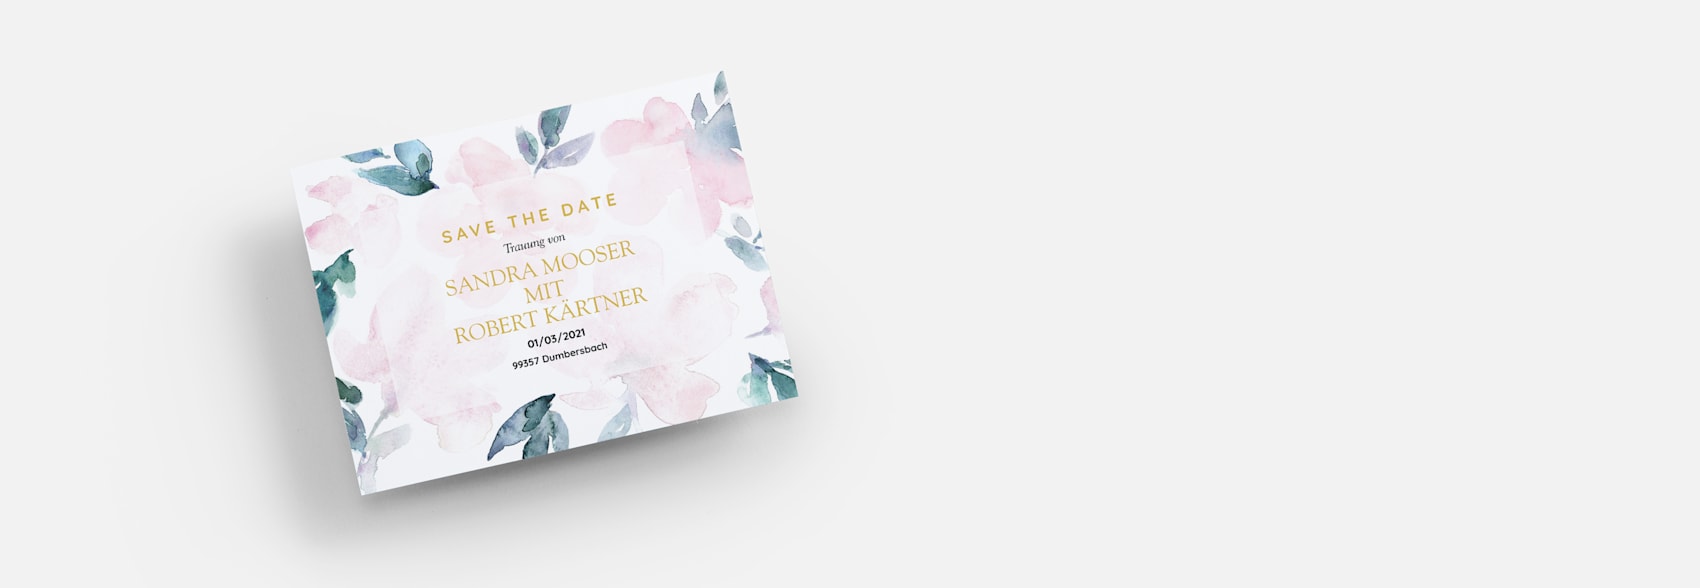 Save the Date Karten für die Hochzeit mit floralem Aquarelldesign